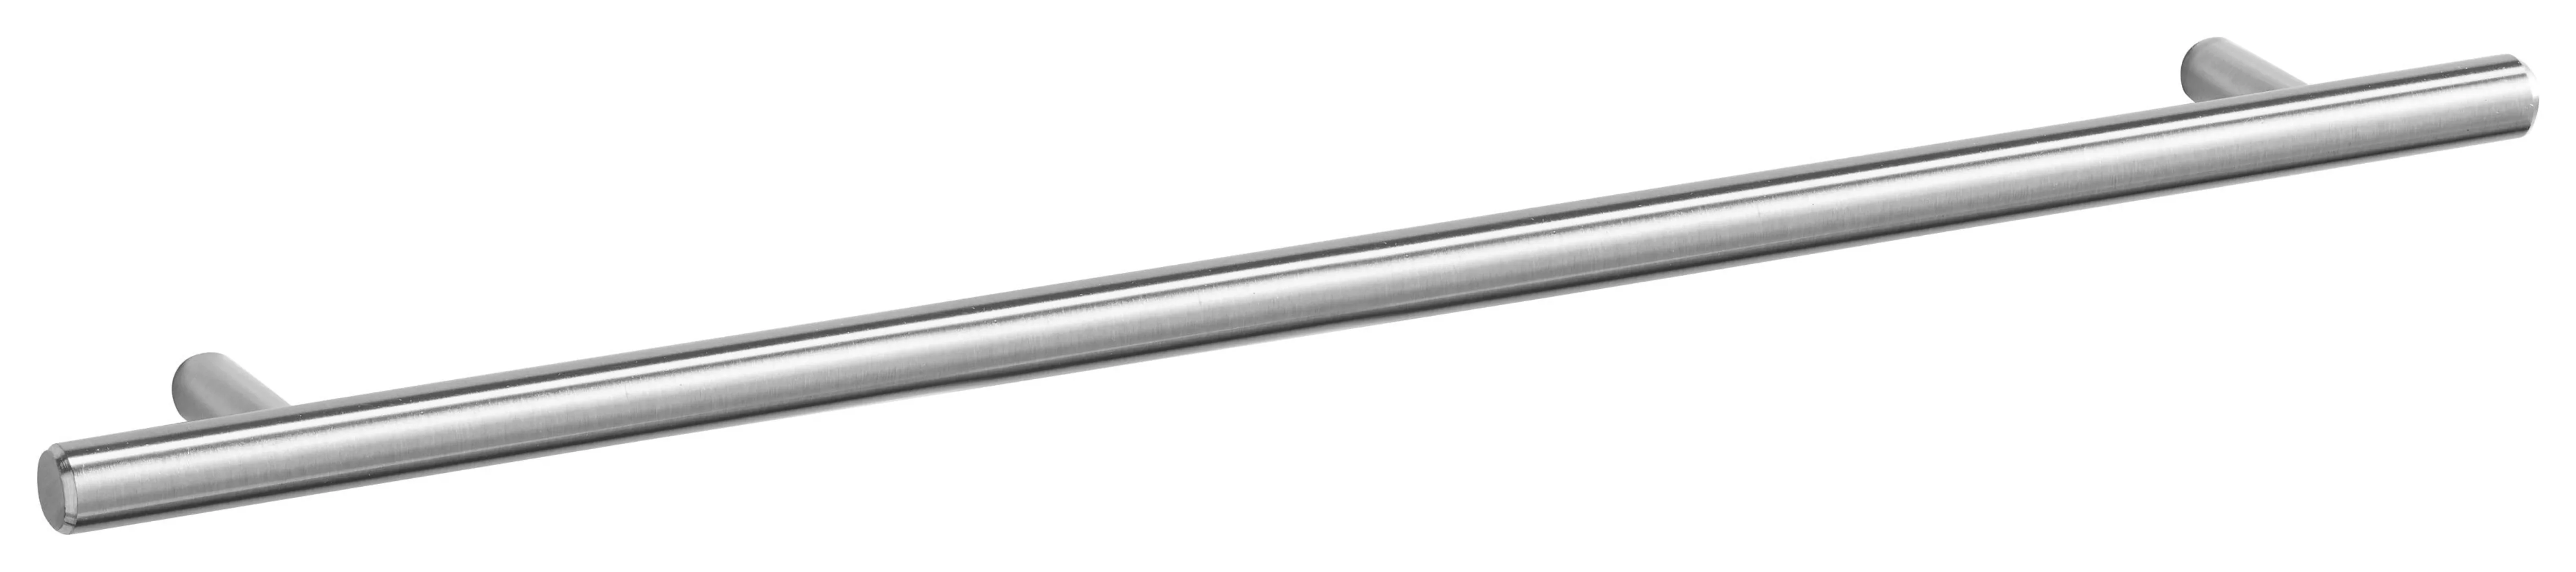 OPTIFIT Hängeschrank "Bern", Breite 30 cm, 70 cm hoch, mit 1 Tür, mit Metal günstig online kaufen